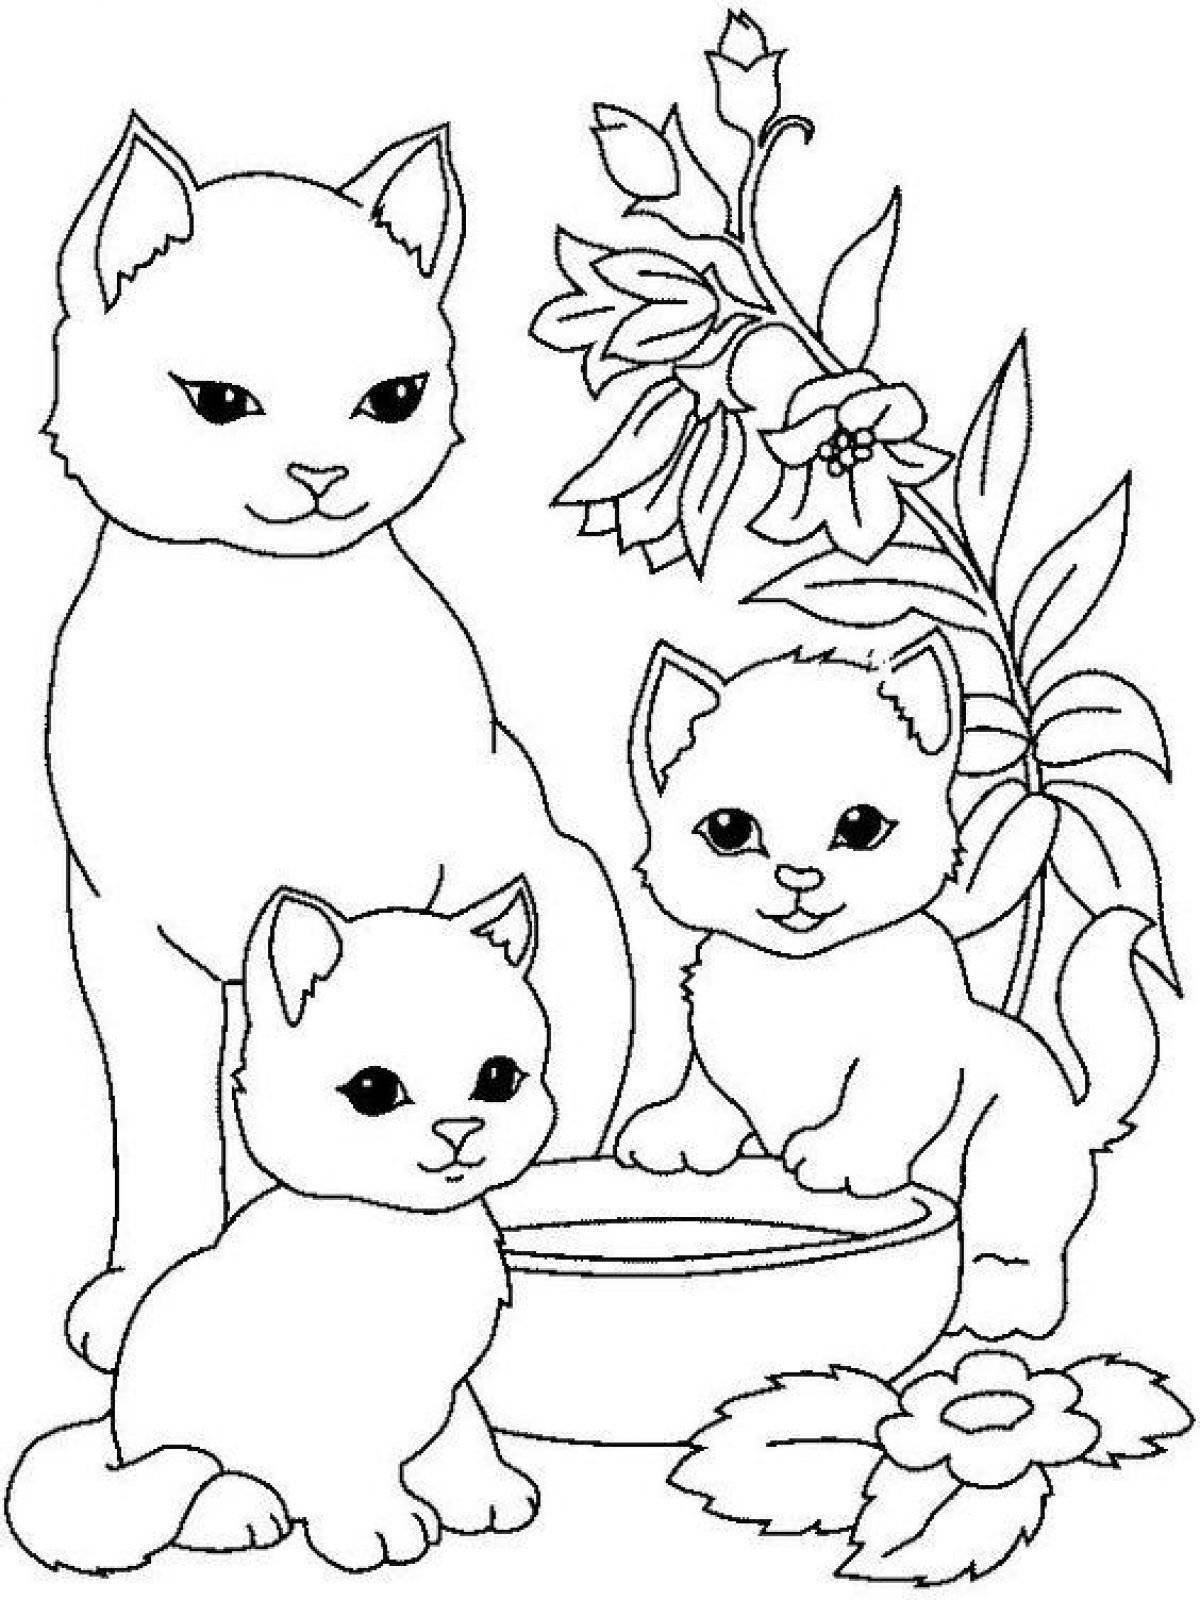 Милая раскраска кошка для детей 4-5 лет